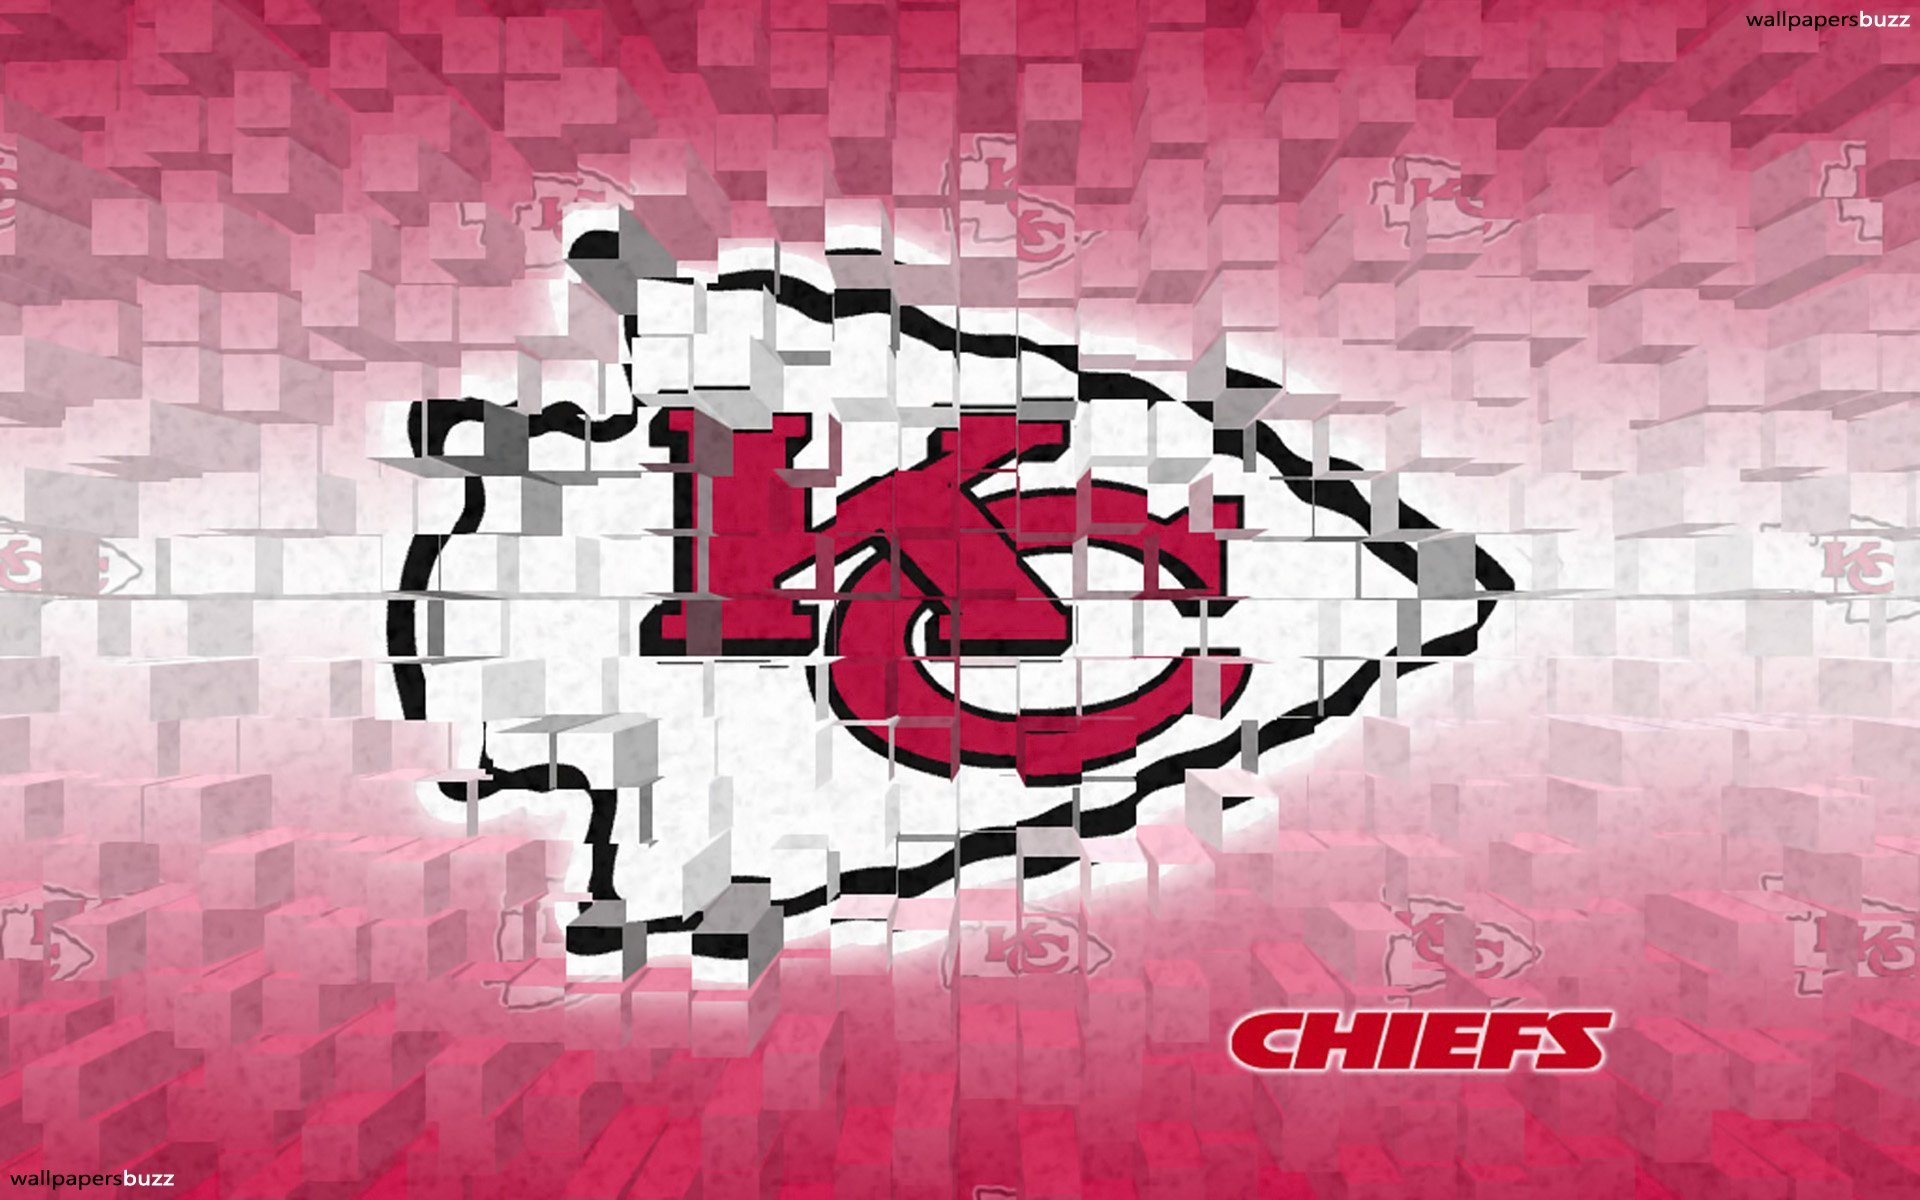 B Kansas City Chiefs 3d - Kansas City Chiefs Facebook Cover - HD Wallpaper 